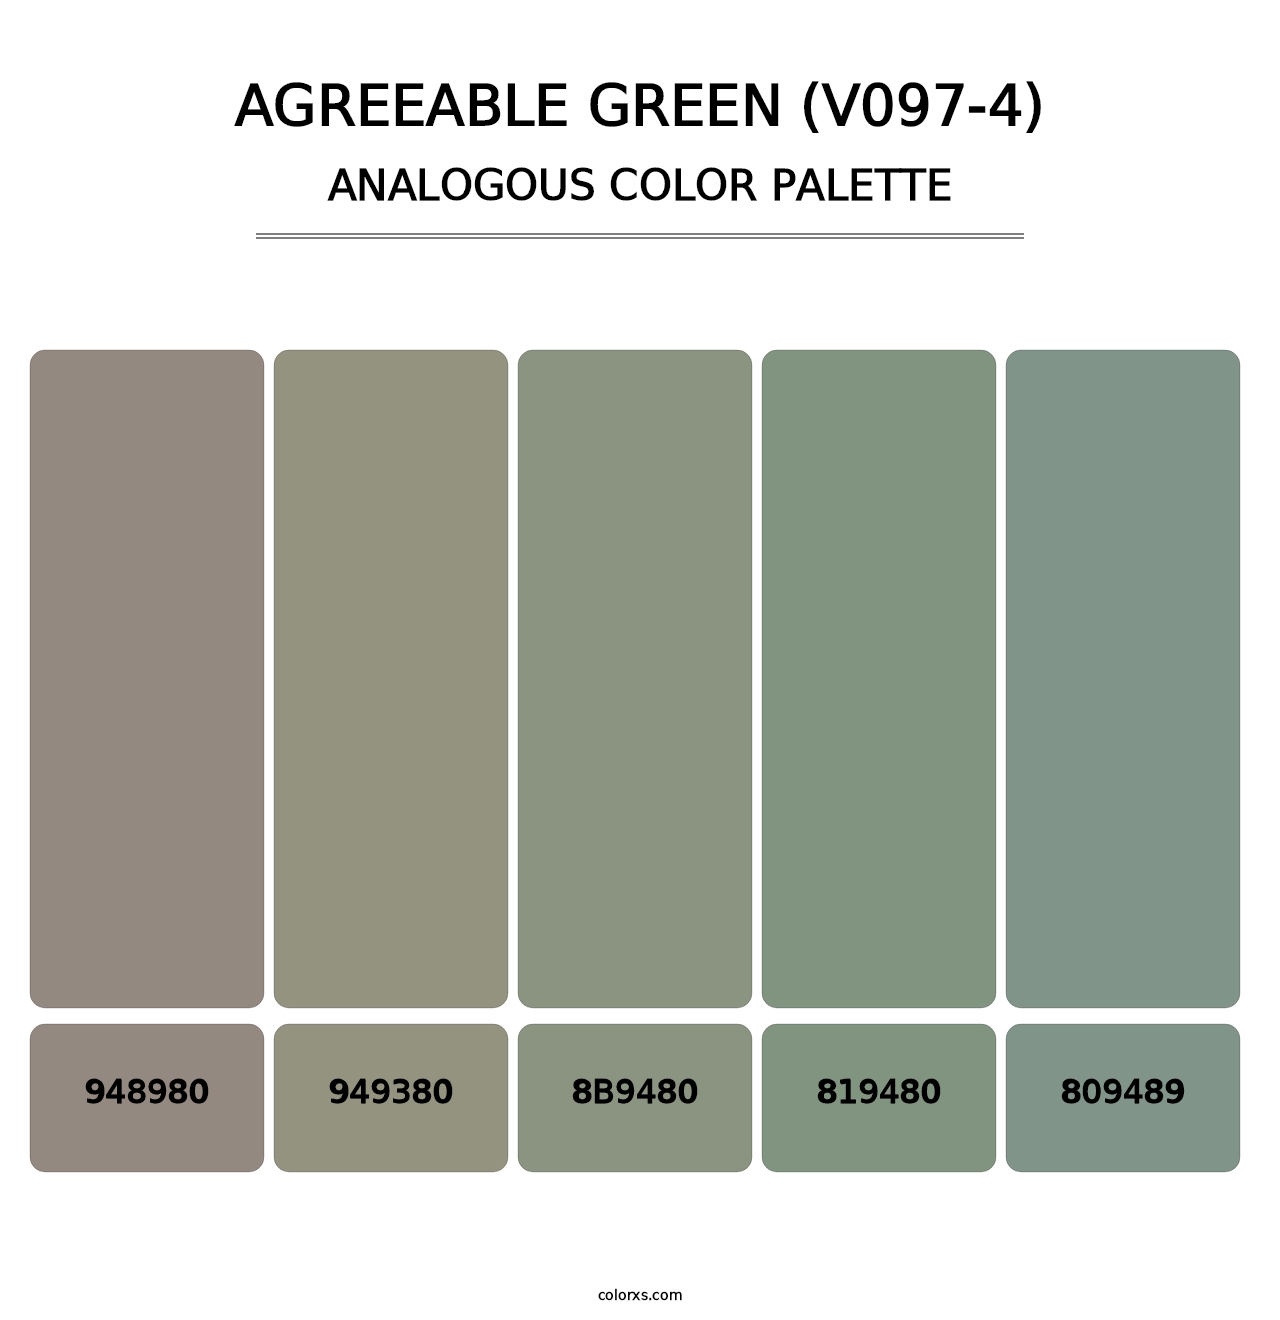 Agreeable Green (V097-4) - Analogous Color Palette